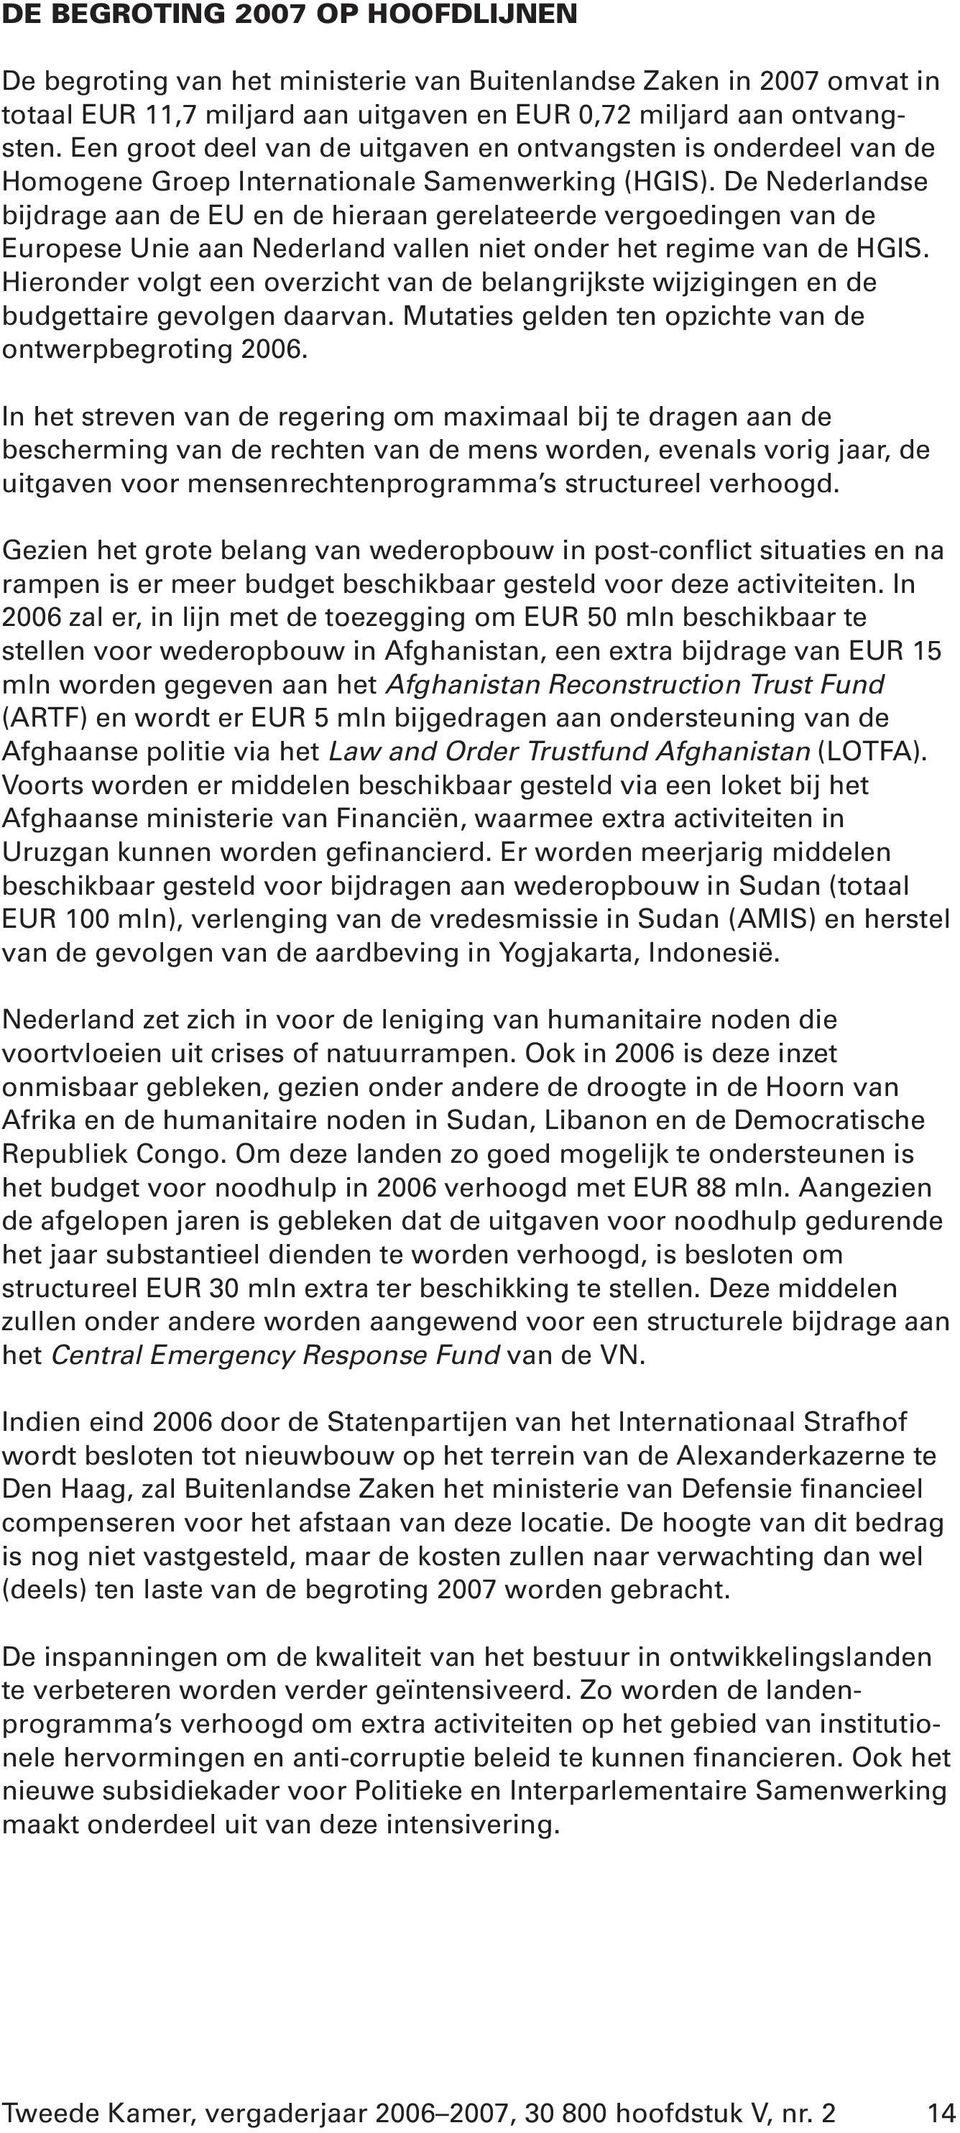 De Nederlandse bijdrage aan de EU en de hieraan gerelateerde vergoedingen van de Europese Unie aan Nederland vallen niet onder het regime van de HGIS.